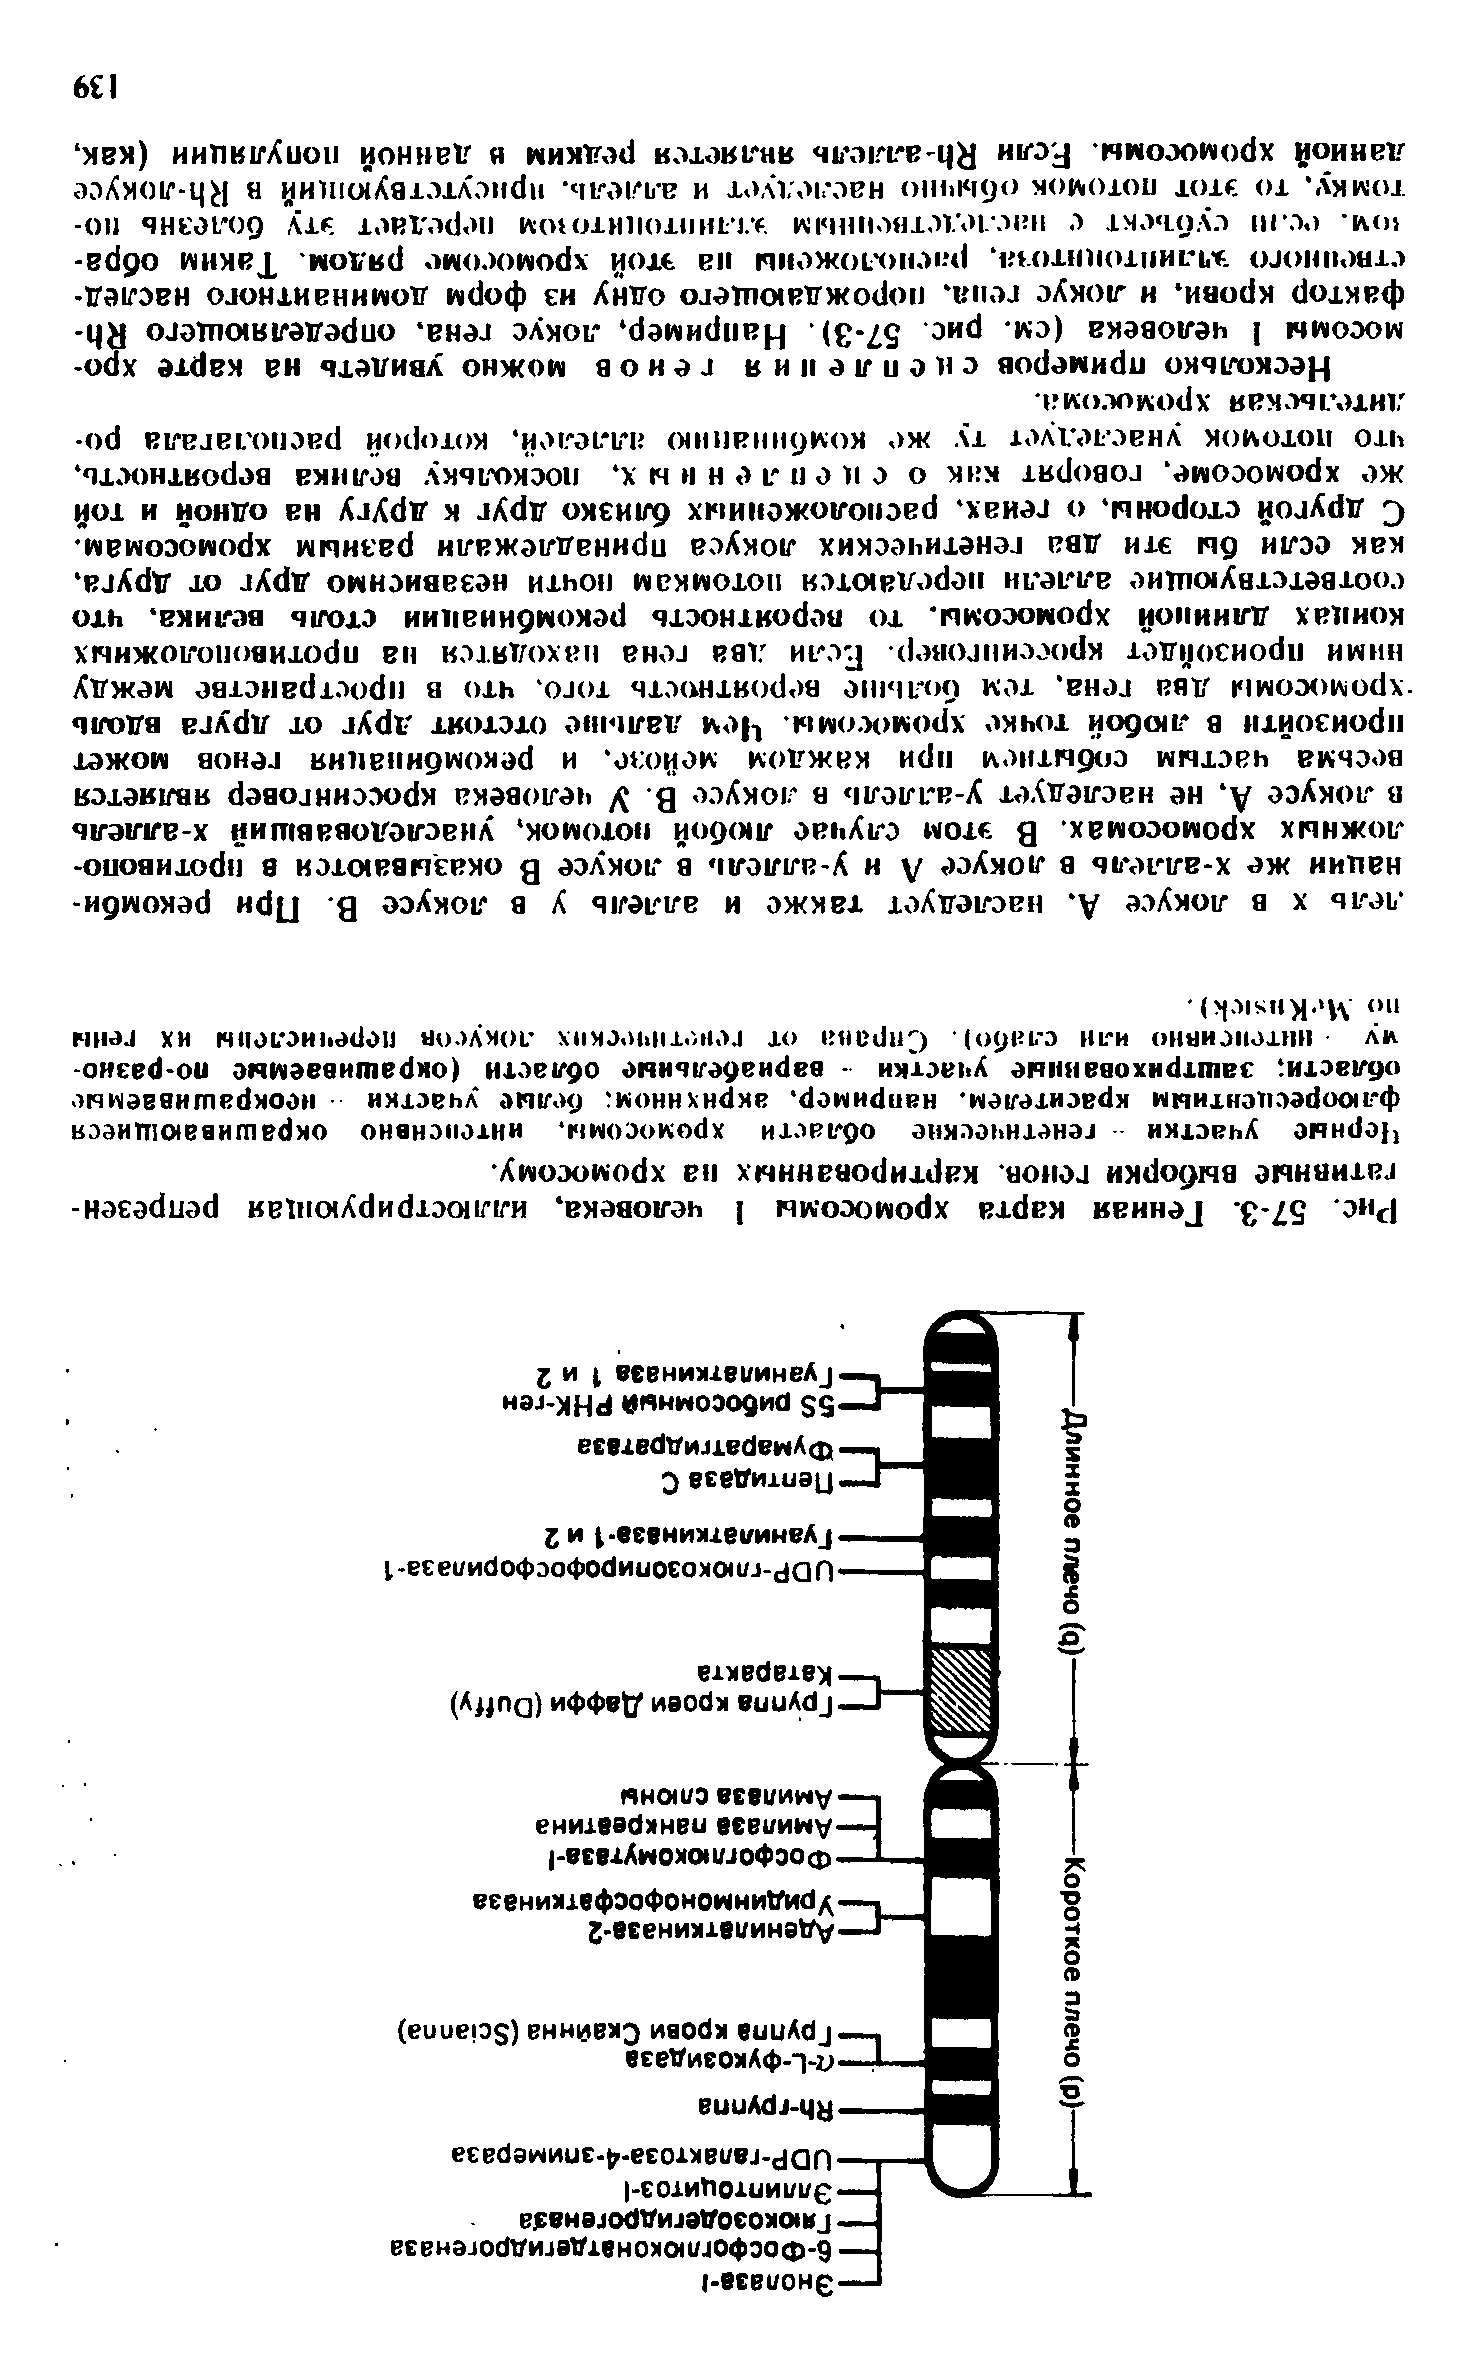 Рис. 57-3. Генная карта хромосомы 1 человека, иллюстрирующая репрезентативные выборки генов, картированных па хромосому.